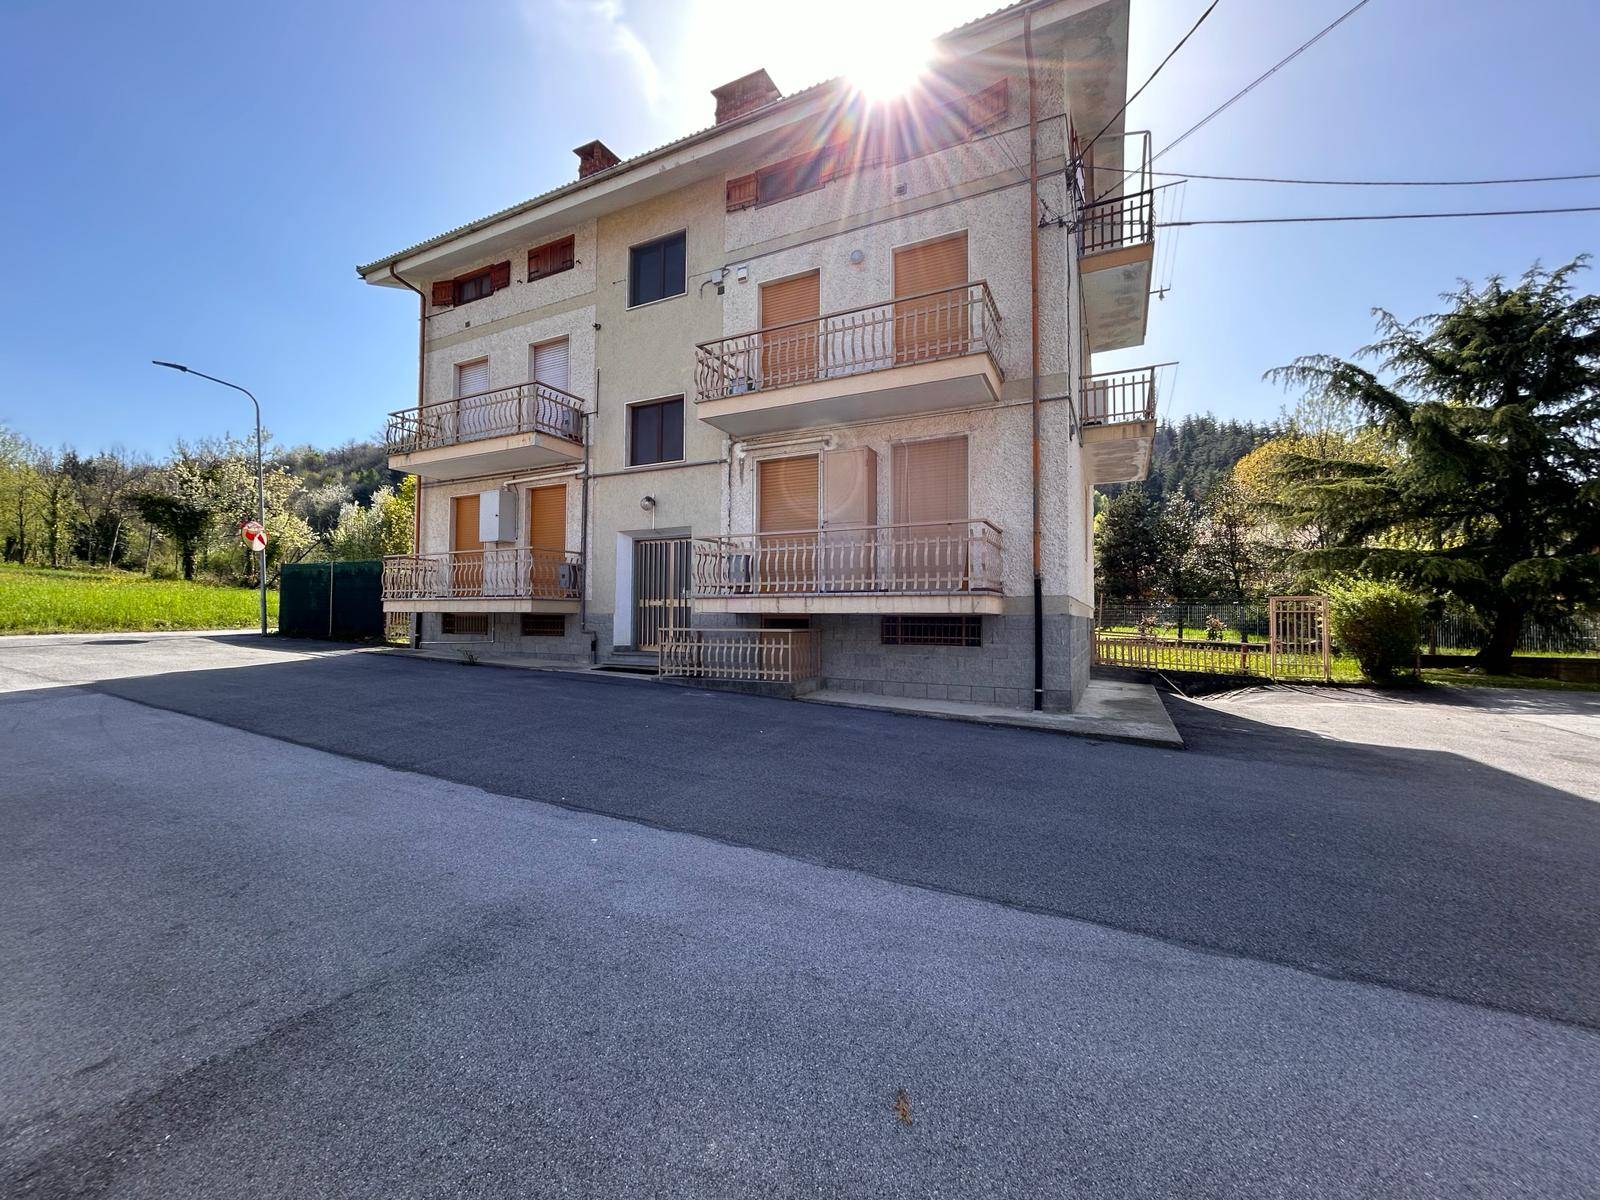 Appartamento in vendita a Chiusa di Pesio, 3 locali, prezzo € 49.000 | PortaleAgenzieImmobiliari.it